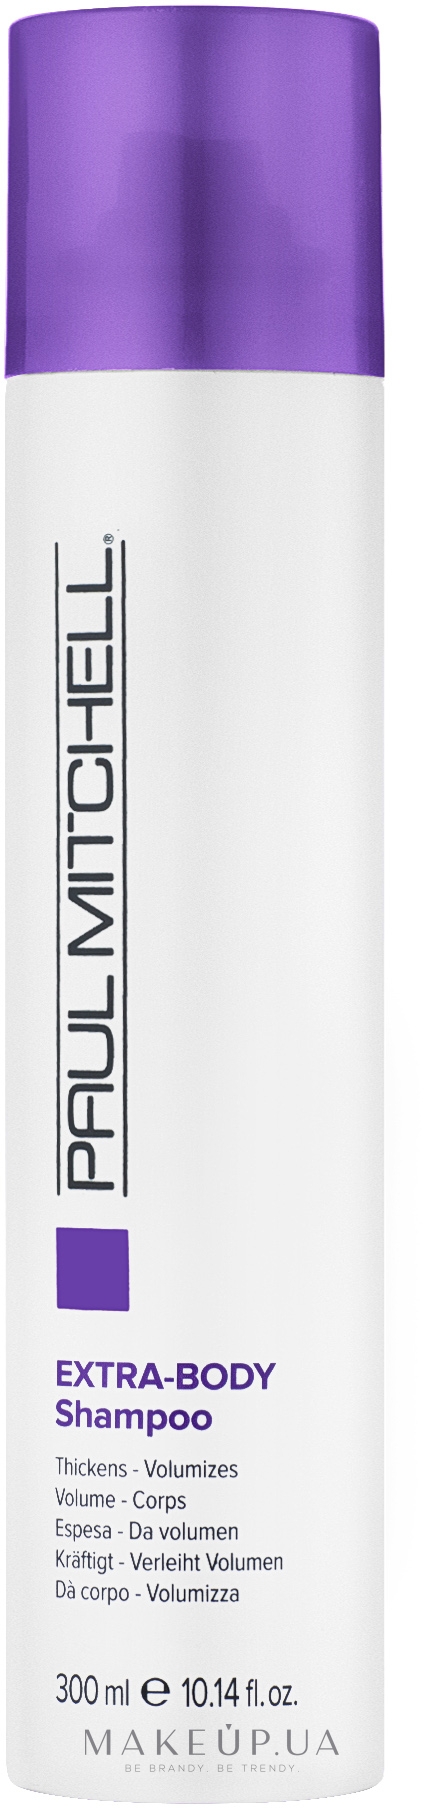 Шампунь для додання обсягу для щоденного застосування - Paul Mitchell Extra-Body Daily Shampoo — фото 300ml